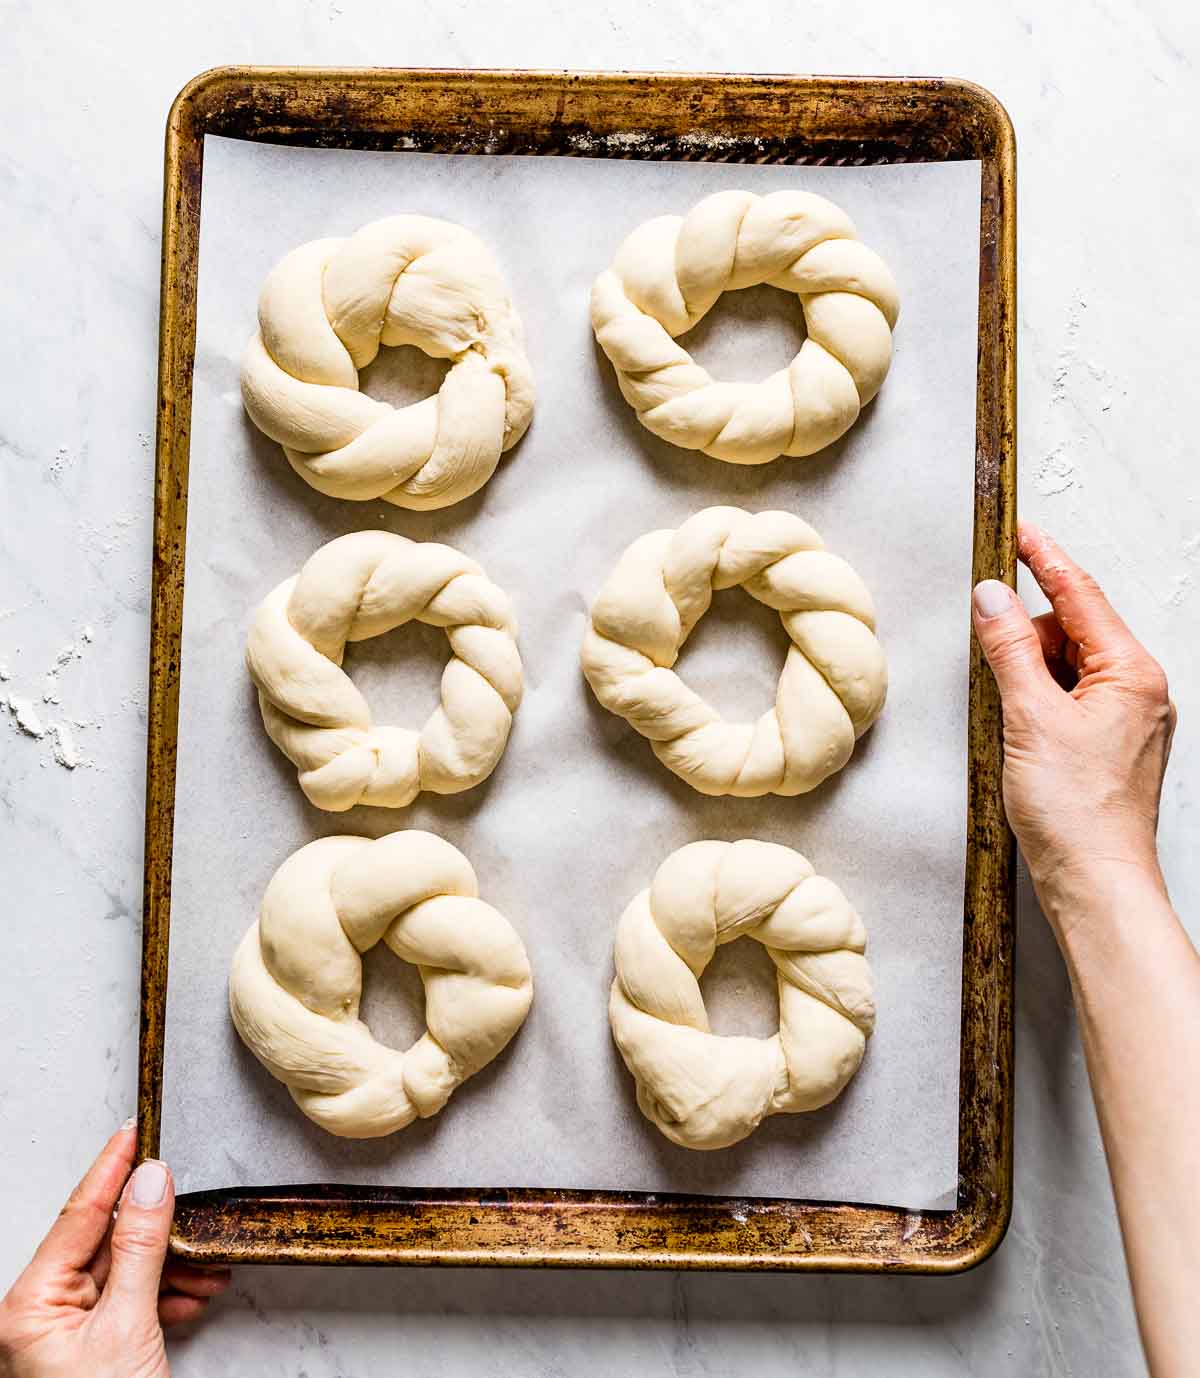 Shaped dough on a sheet pan